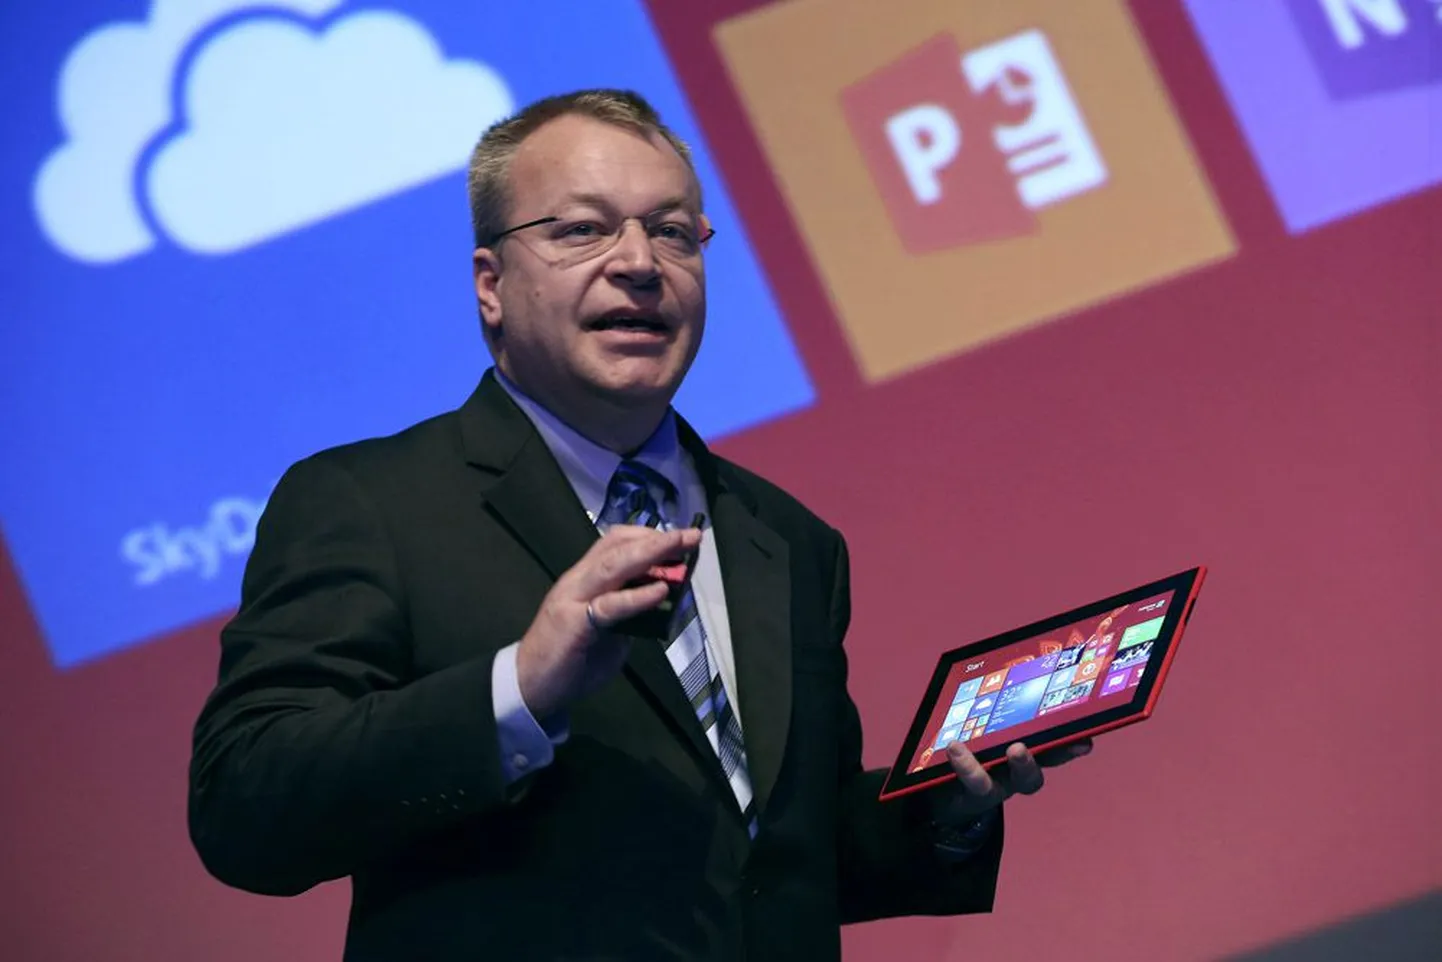 Möödunud nädalal esitles Nokia toodete ja teenuste üksuse juht Stephen Elop esimest Lumia tahvelarvutit.